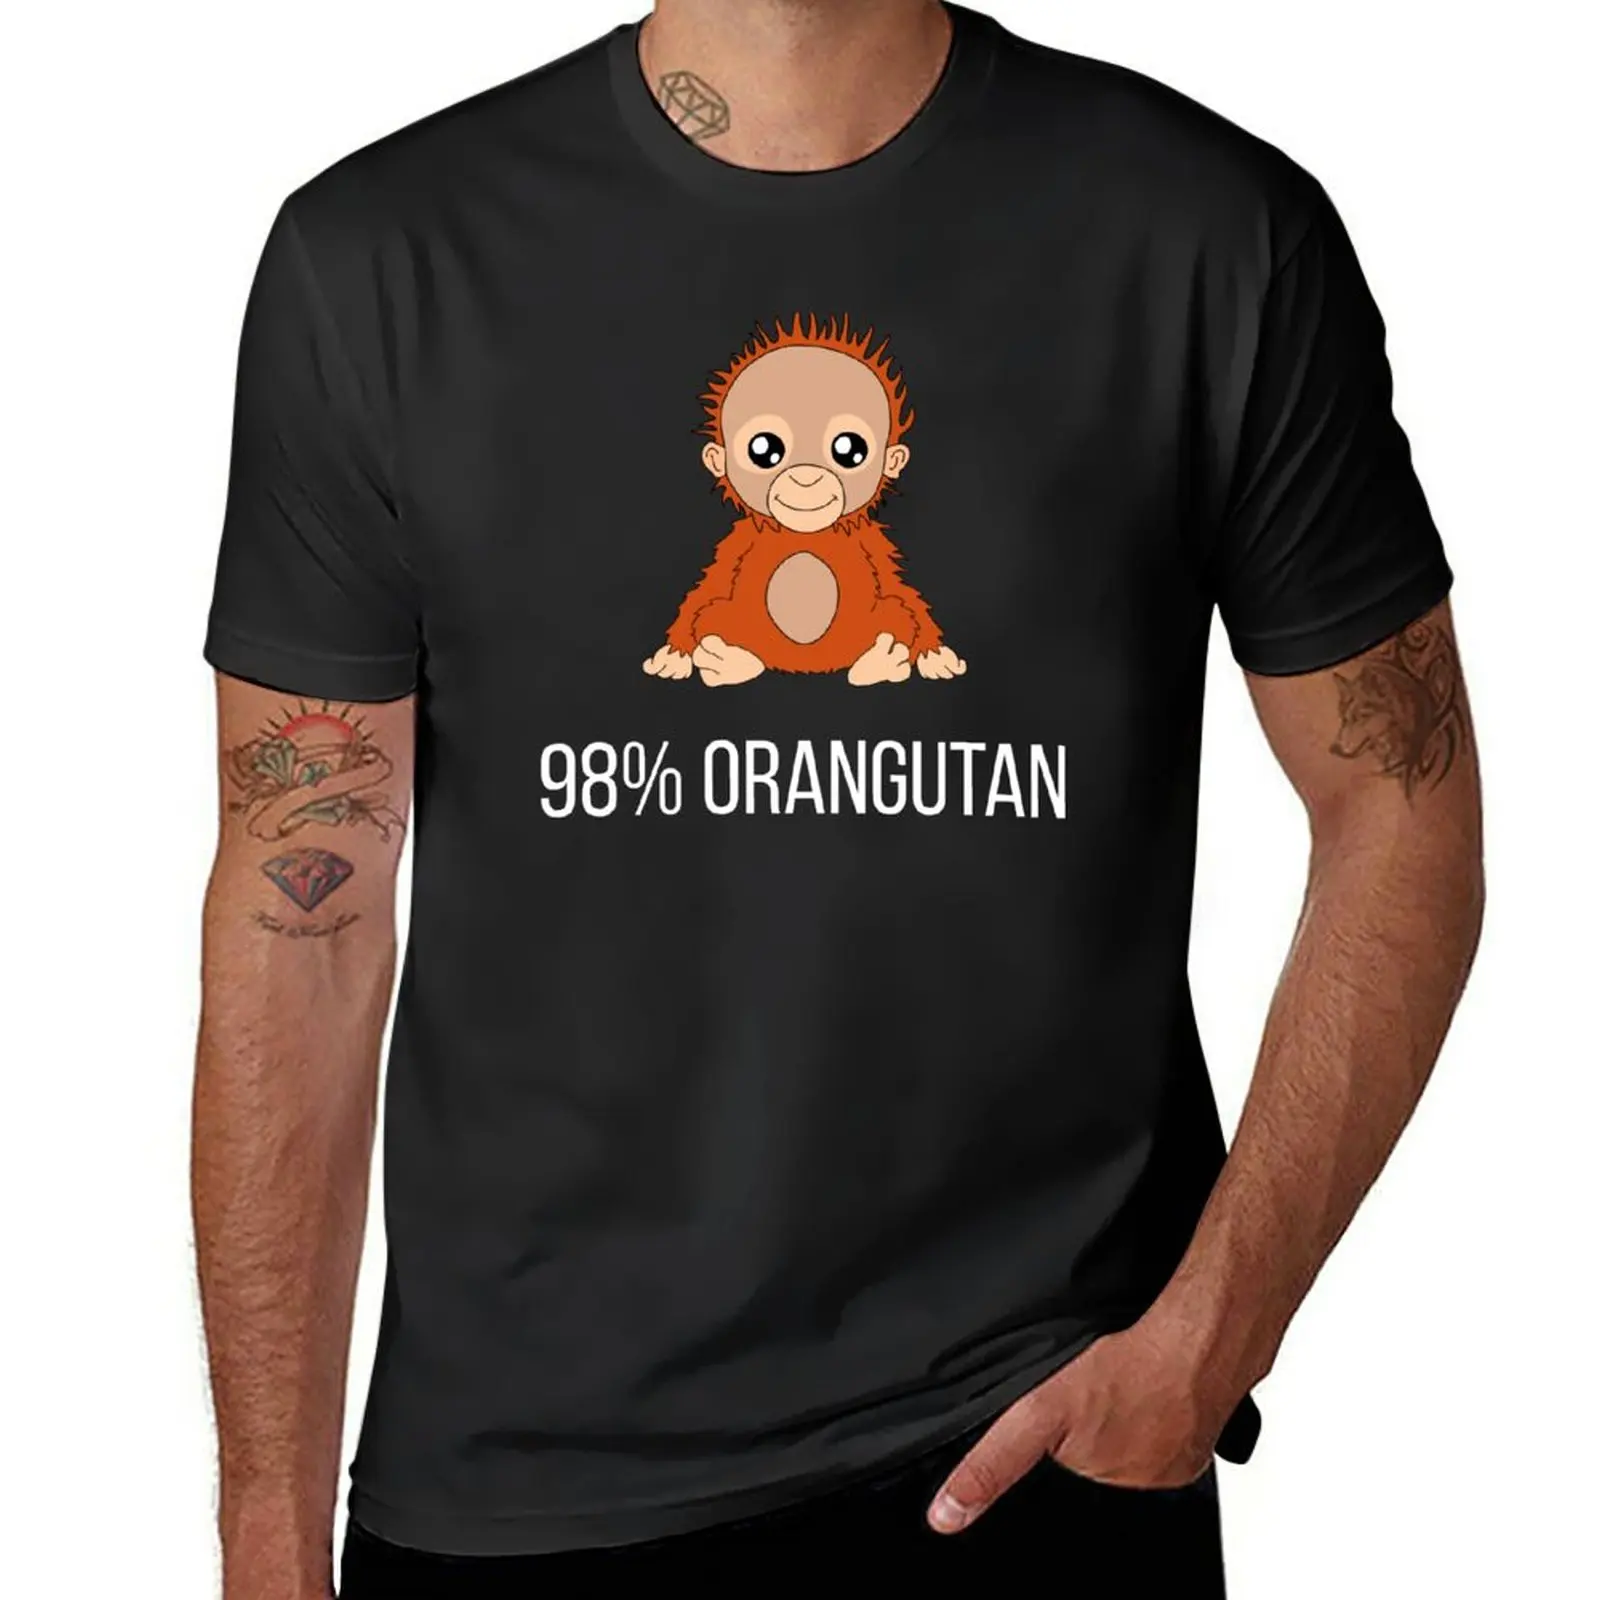 98% футболка с орангутаном футболки, графические футболки, винтажная мужская одежда